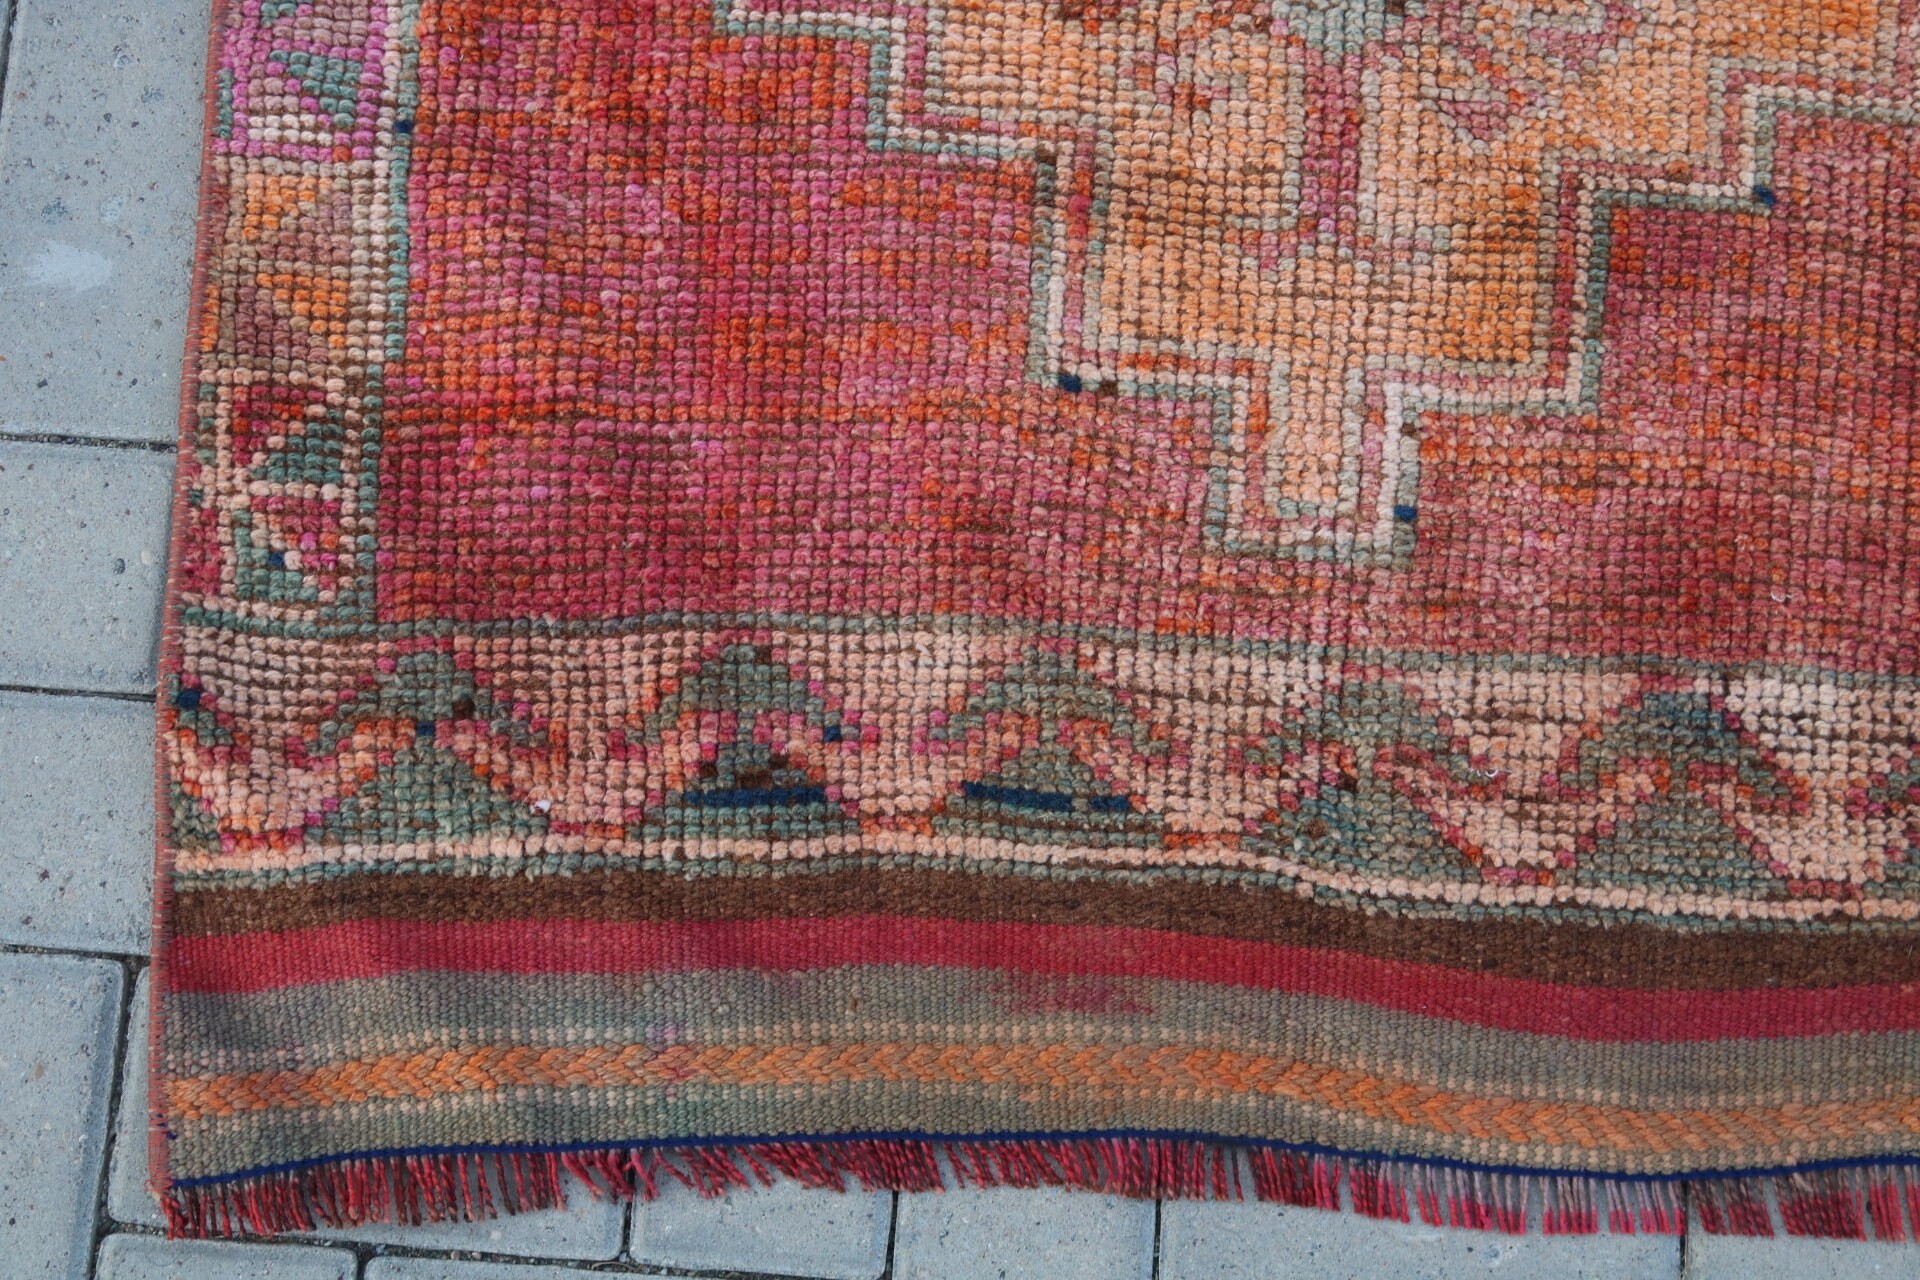 Vintage Rugs, Tribal Rug Runner Rugs, Anatolian Rug, Stair Rug, Rugs for Corridor, 3.1x11.4 ft Runner Rug, Colorful Rug, Turkish Rugs